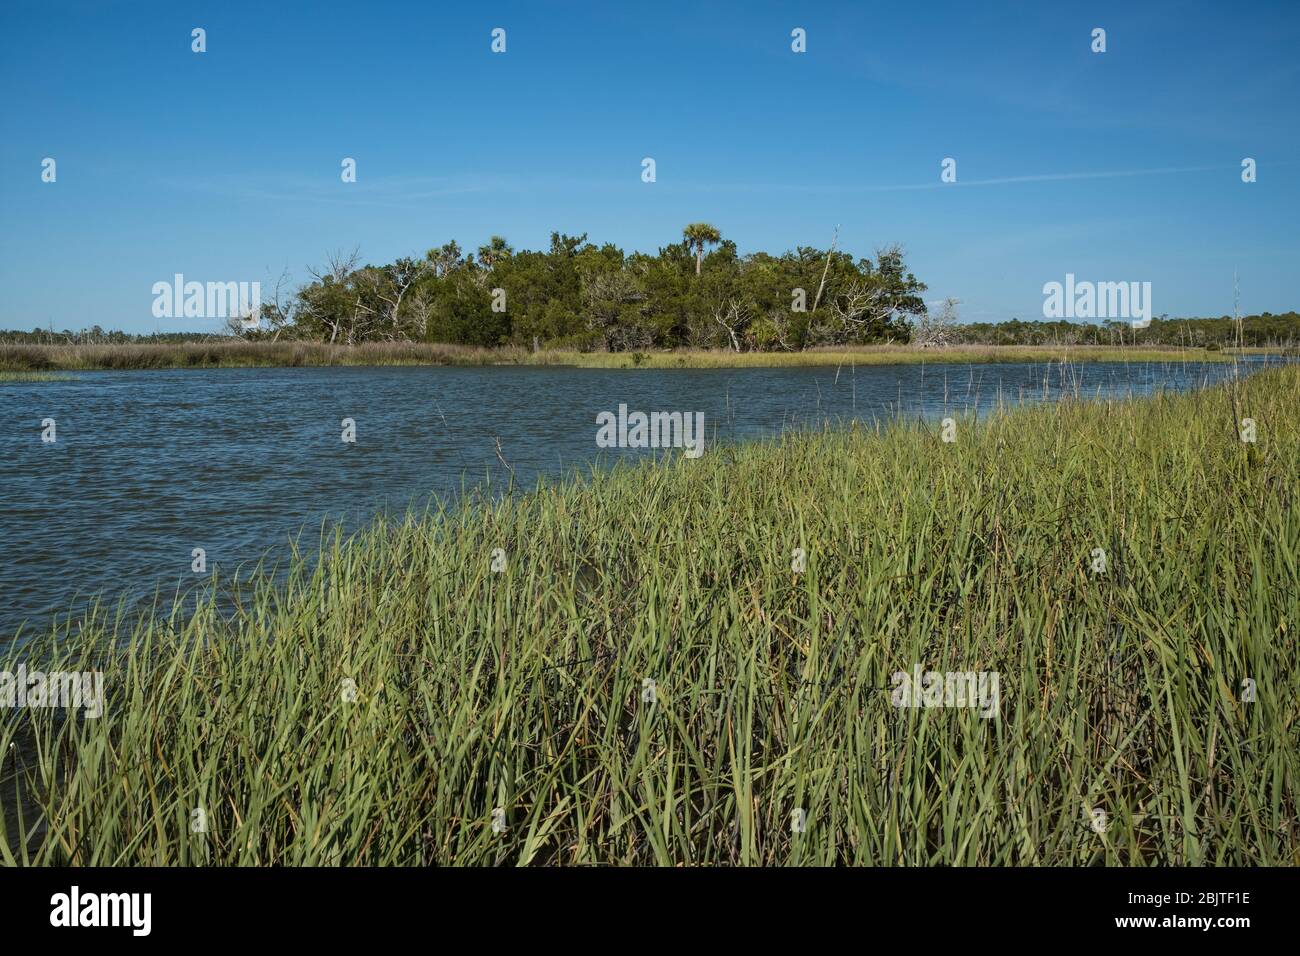 Florida Salt Marsh. Costa del Golfo vicino a Yankeetown, Florida. Panoramica maresca di sale marea costiera con rush, erba, alberi. Comunità costiera naturale della Florida. Foto Stock